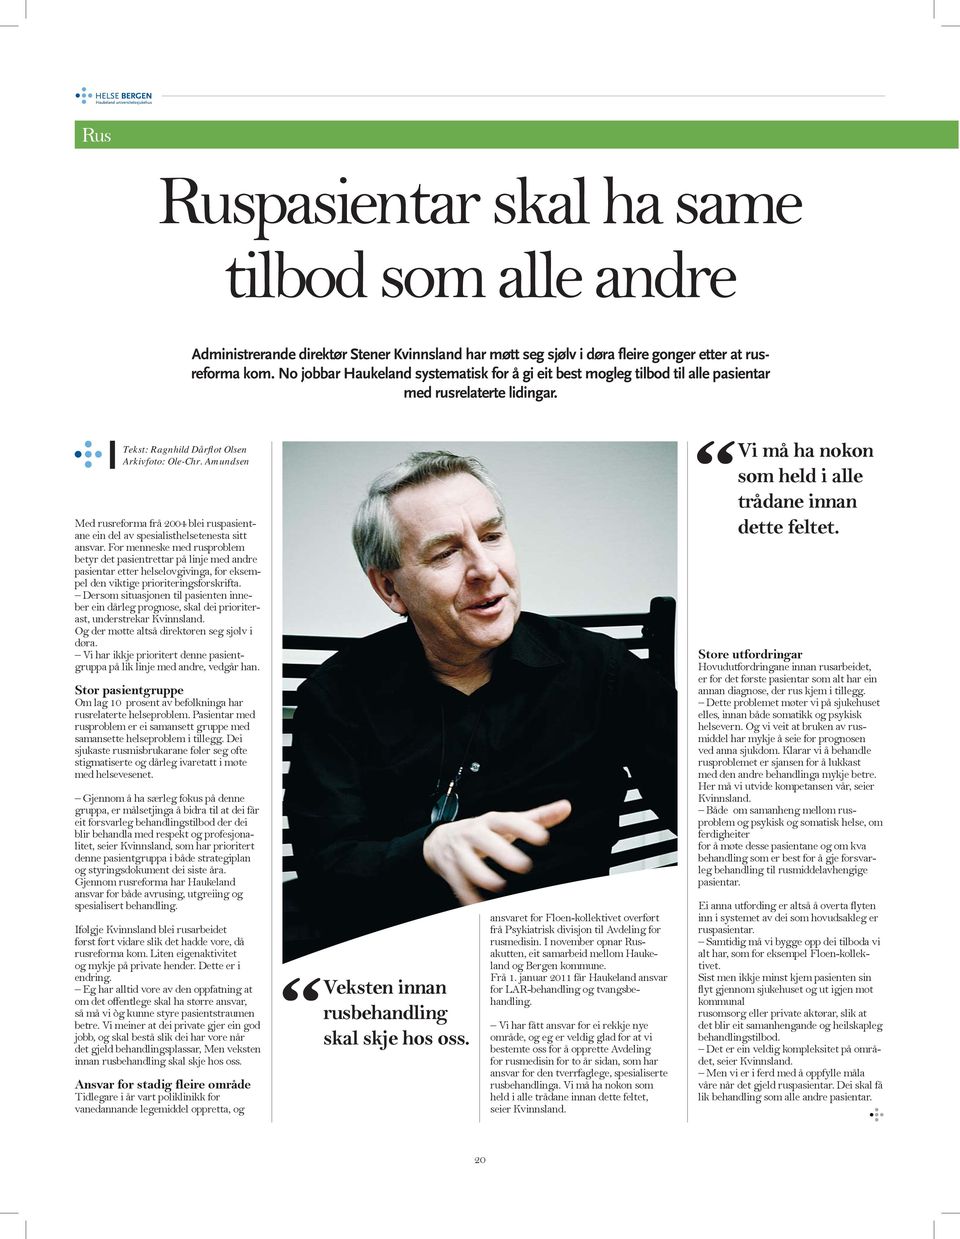 Amundsen Med rusreforma frå 2004 blei ruspasientane ein del av spesialisthelsetenesta sitt ansvar.